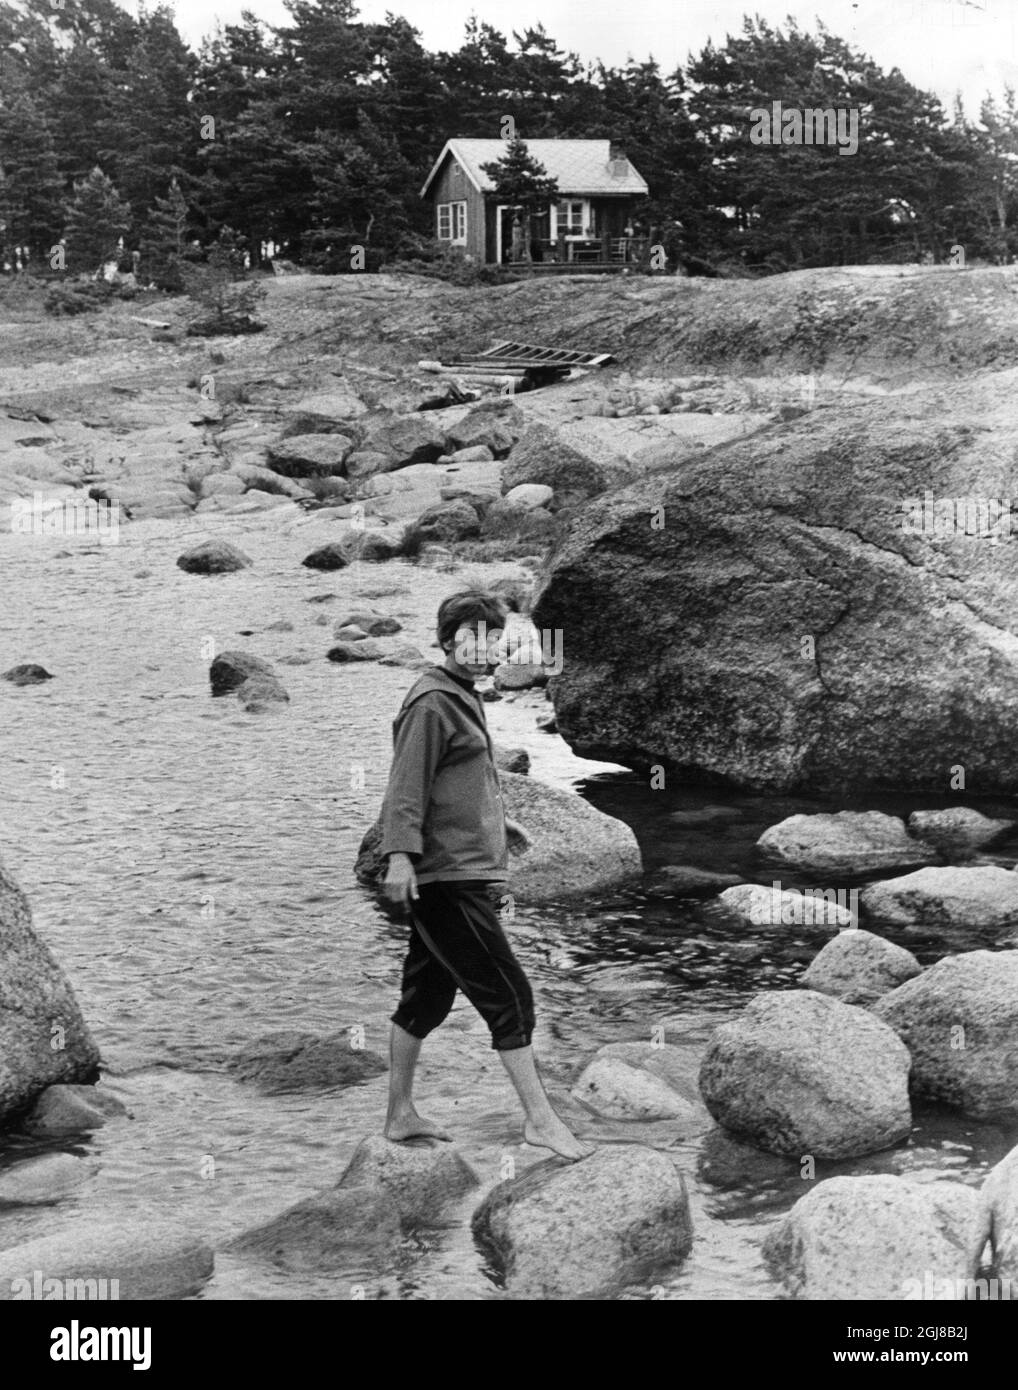 BREDSKAR (ARCHIVO 13 JULI 1961) -escritora e ilustradora finlandesa Tove Jansson (9 de agosto de 1914 Â– 27 de junio de 2001), madre de los libros infantiles más famosos del mundo sobre los Moomintrolls. Este año, 2014, Tove Jansson habría cumplido 100 años. La foto muestra a Tove Jansson el verano de 1961 en la pequeña isla de Bredskar en el Golfo de Finlandia donde tenía casas de la severla. Foto: Alf Lidman código 190 Foto de stock